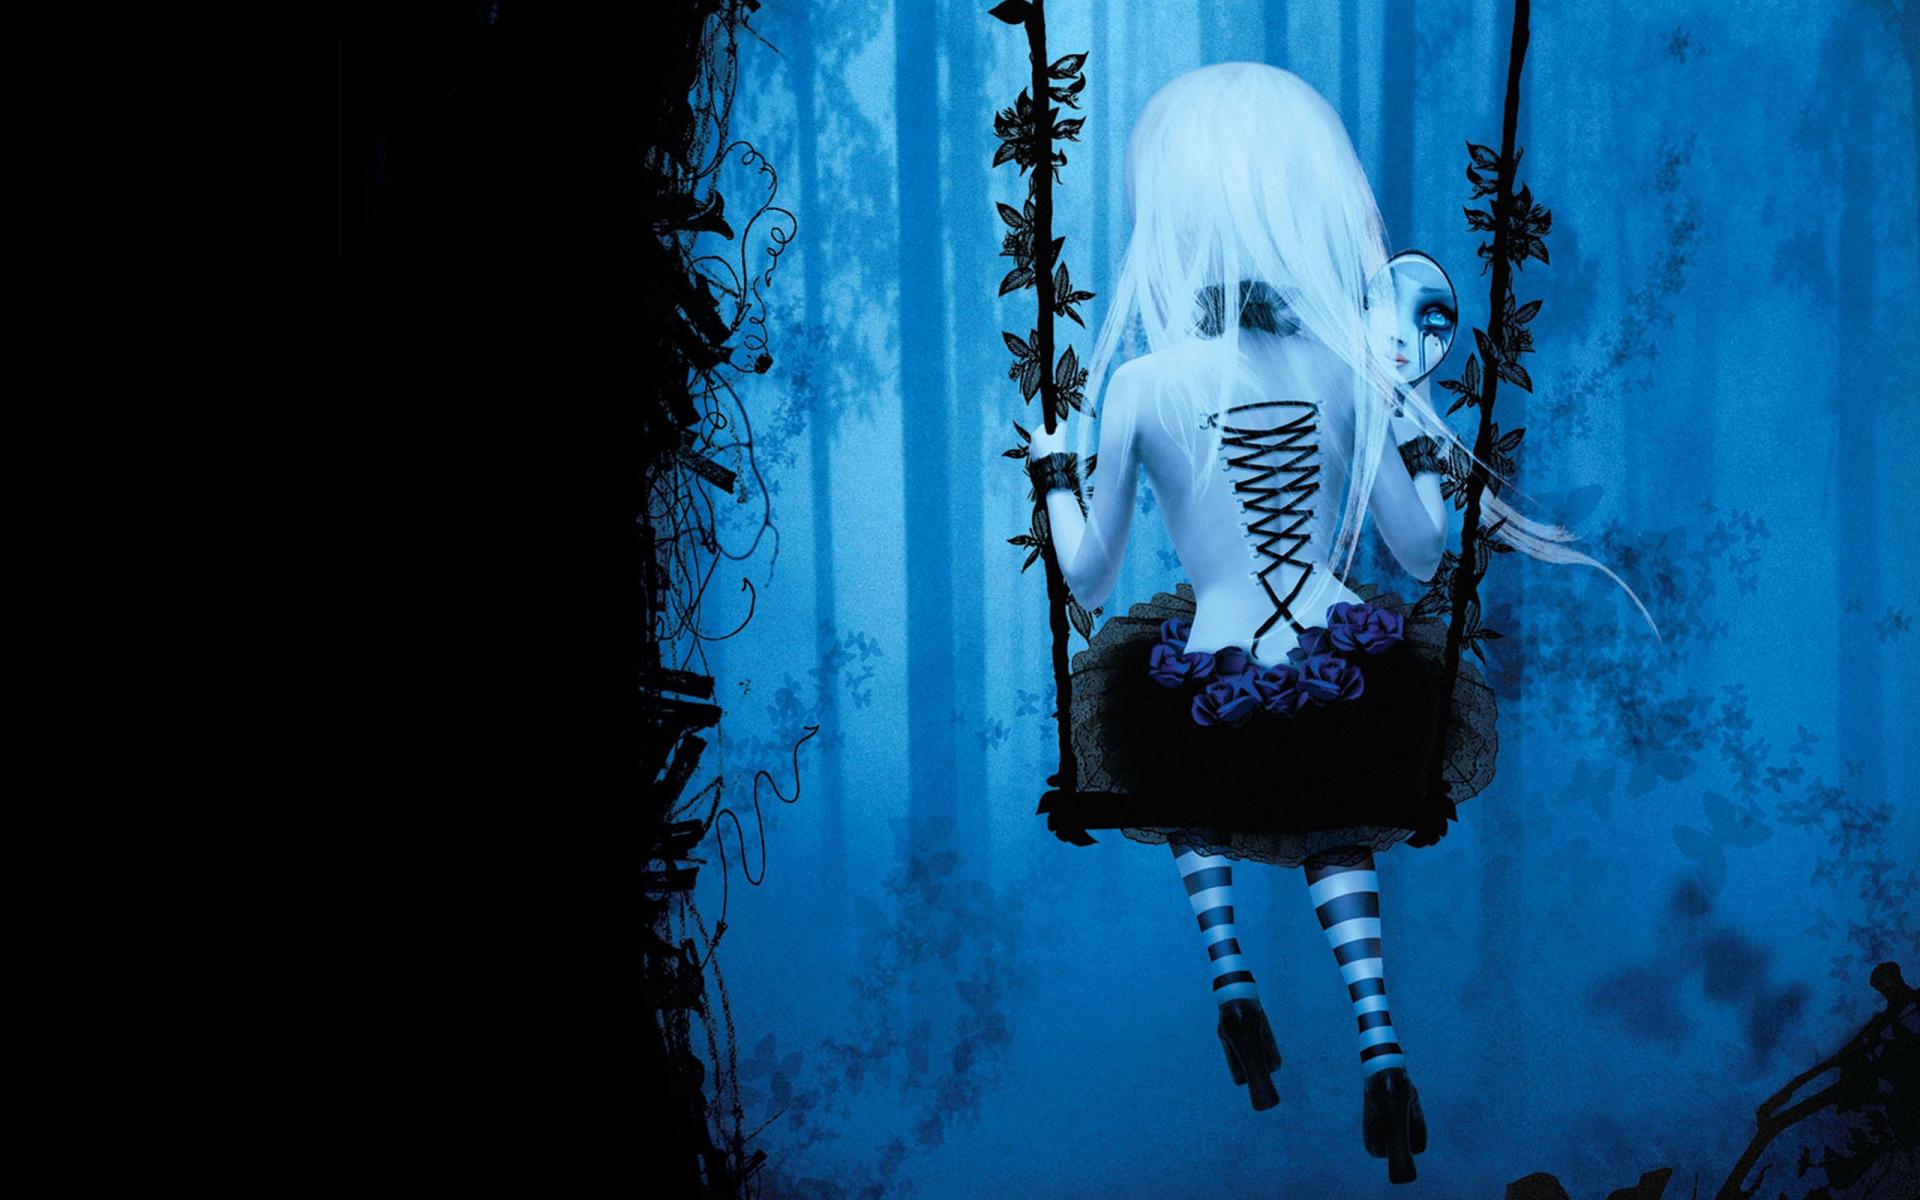 Dark Gothic Anime Fantasy Trees Fog Mood Girl Women Swing Wallpaper